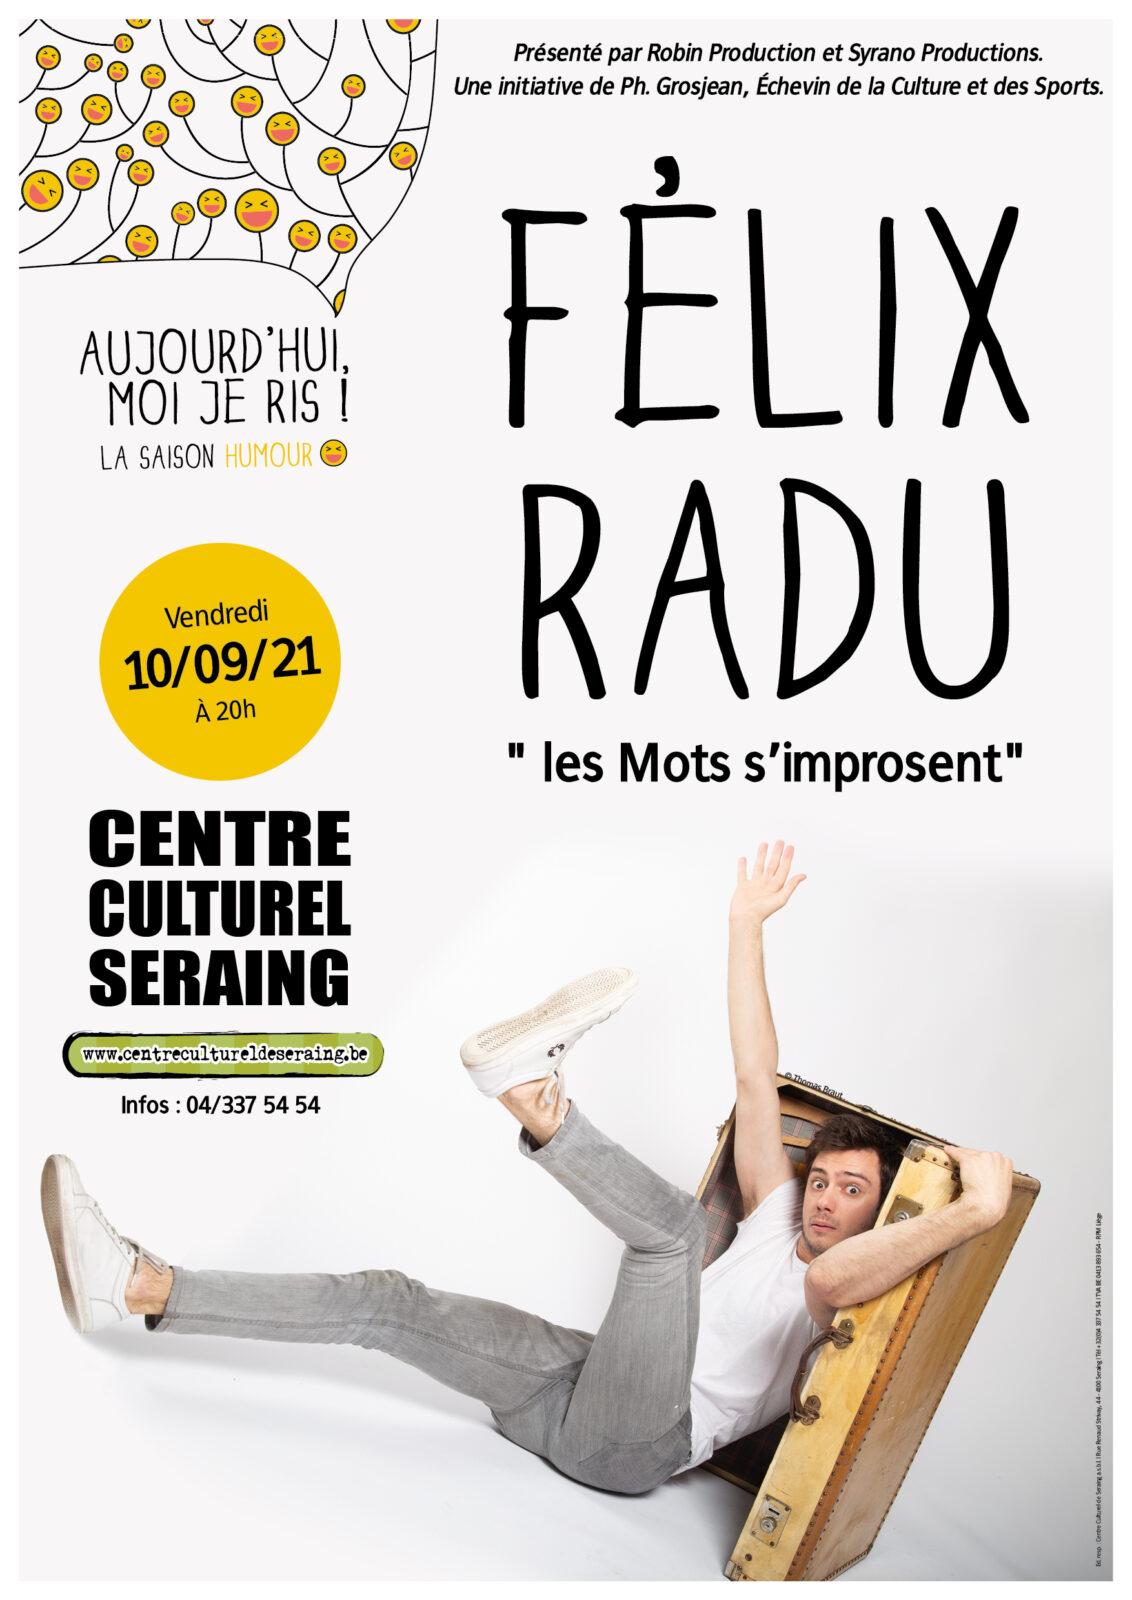 Assistez au spectacle de Félix Radu ce vendredi au Centre culturel de Seraing